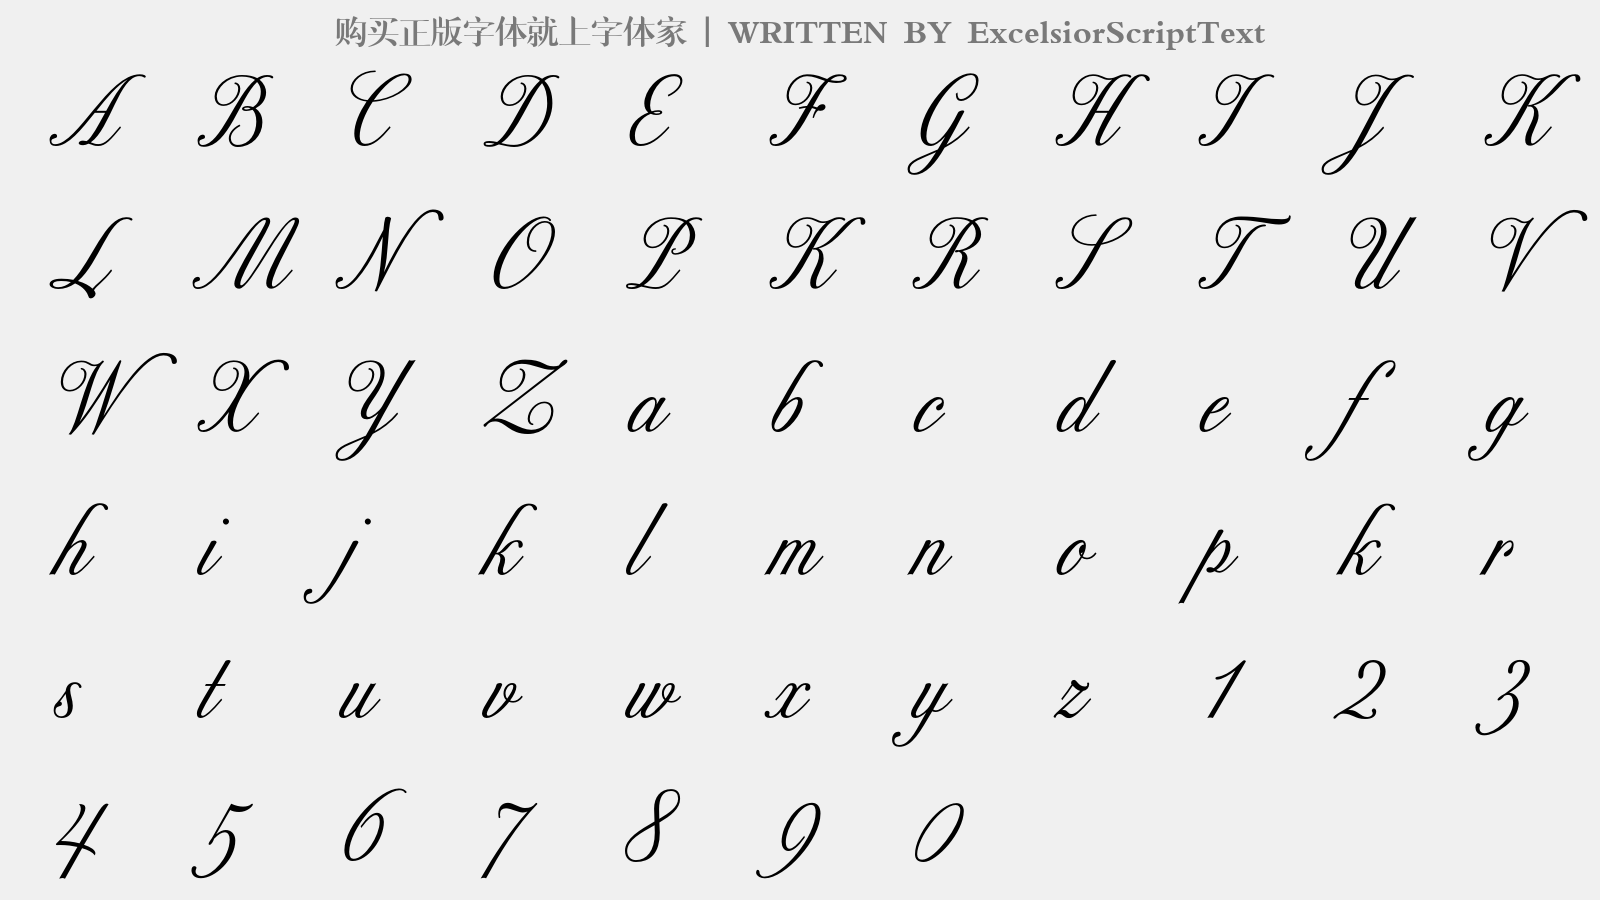 ExcelsiorScriptText - 大写字母/小写字母/数字